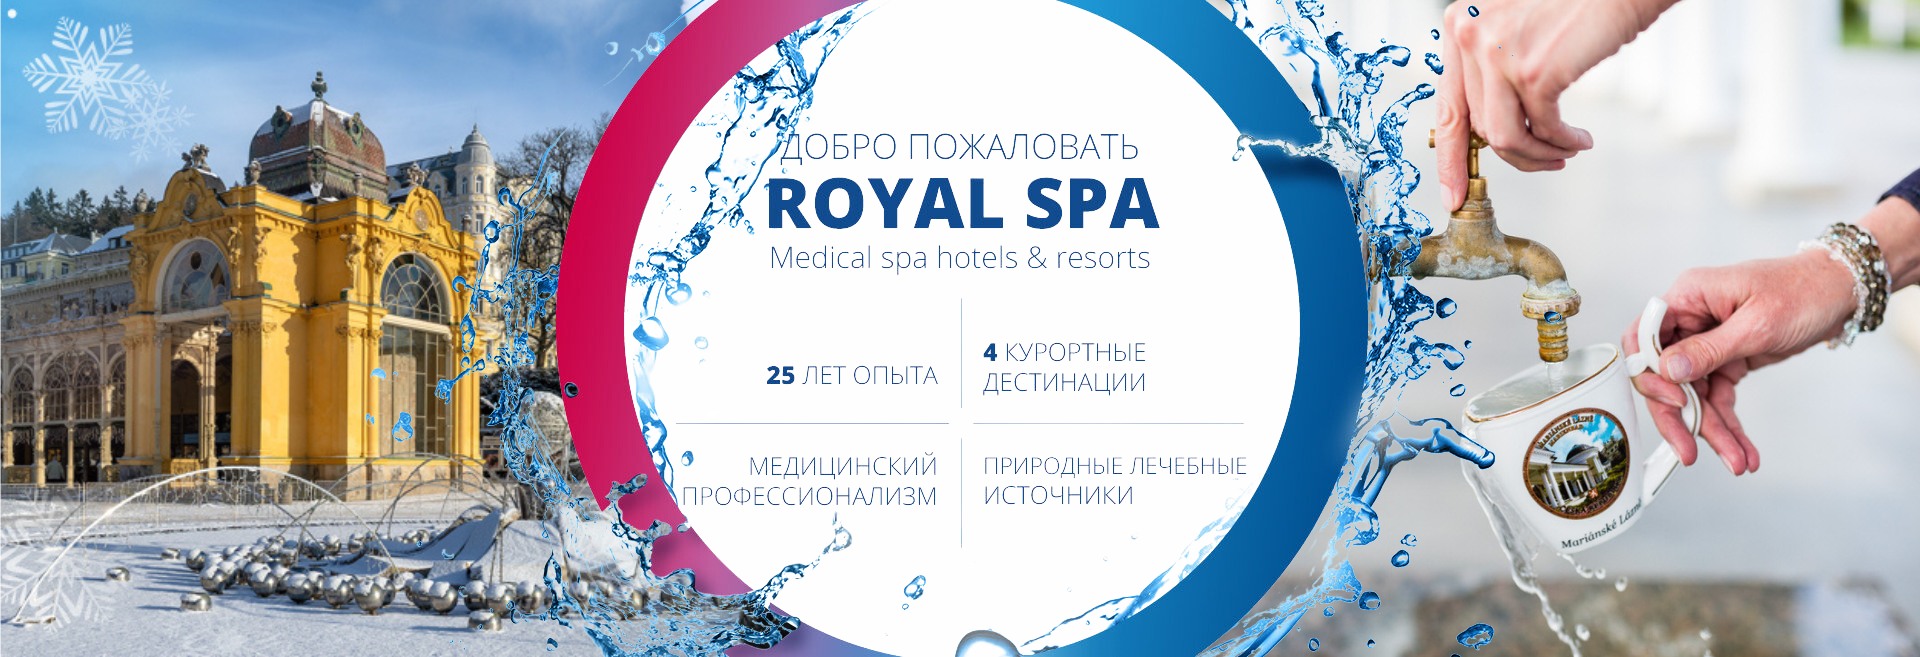 Добро пожаловать в ROYAL SPA - Ваш партнер по гармонии и здоровью